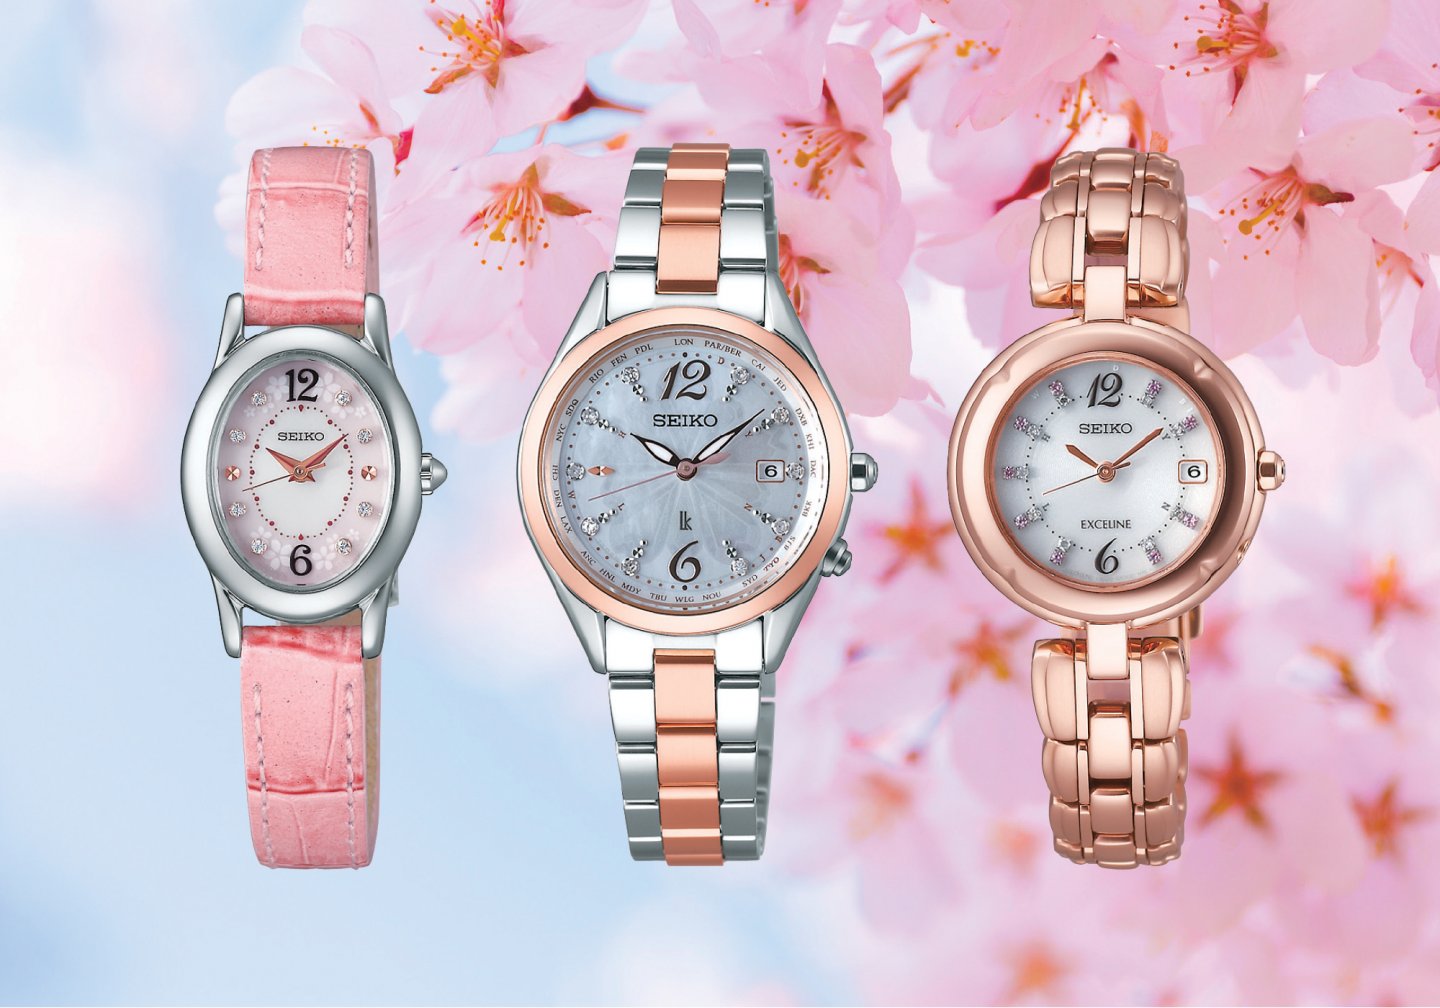 SAKURA Blooming 限定モデル 3種類の桜をモチーフにした華やかなモデルを7機種同時発売